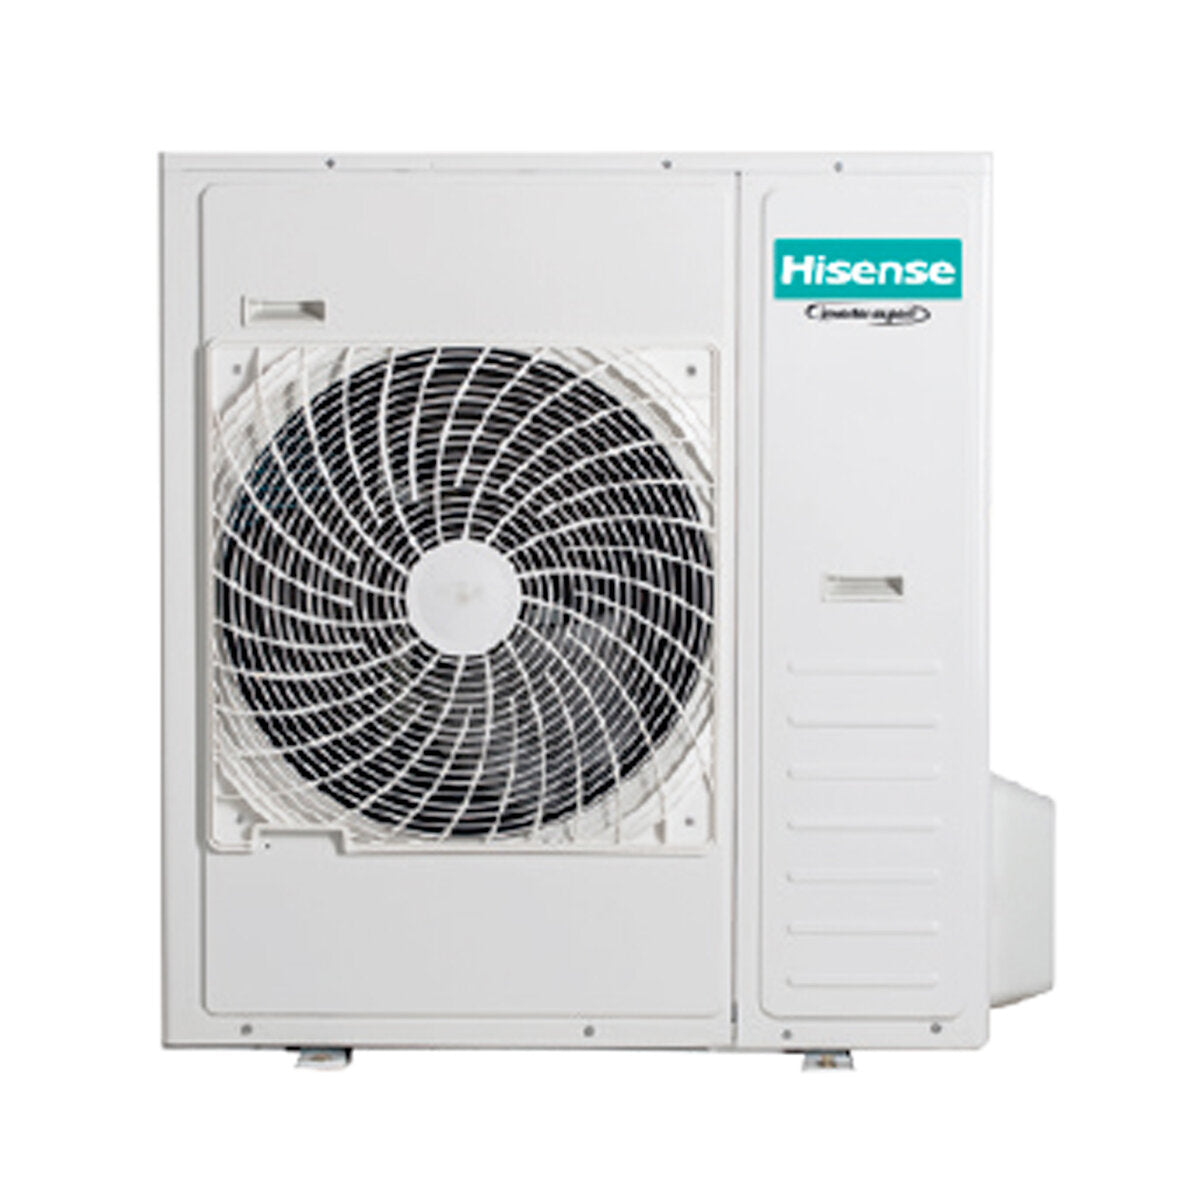 Hisense Hi-Comfort trial split air conditioner 9000 + 9000 + 24000 BTU wifi inverter outdoor unit 12.5 kW